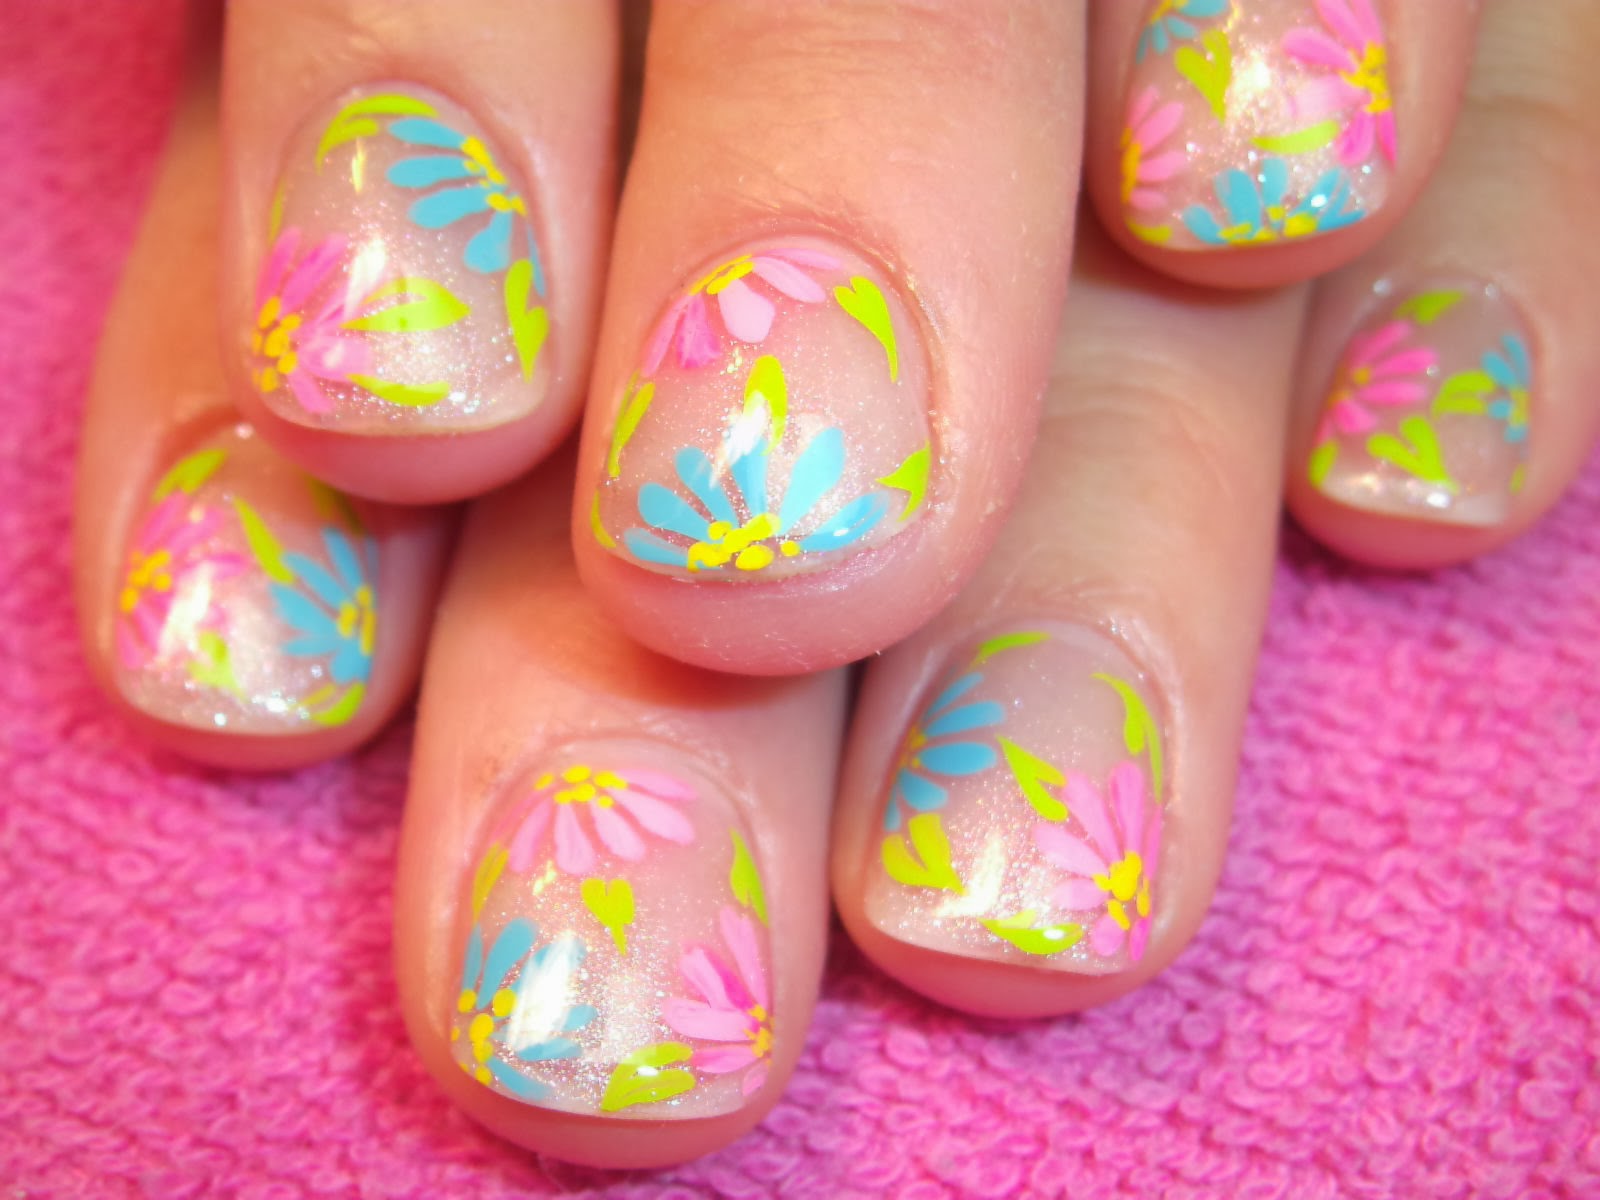 Nail Art by Robin Moses: "flower nail art" "easy nail art" "simple nail